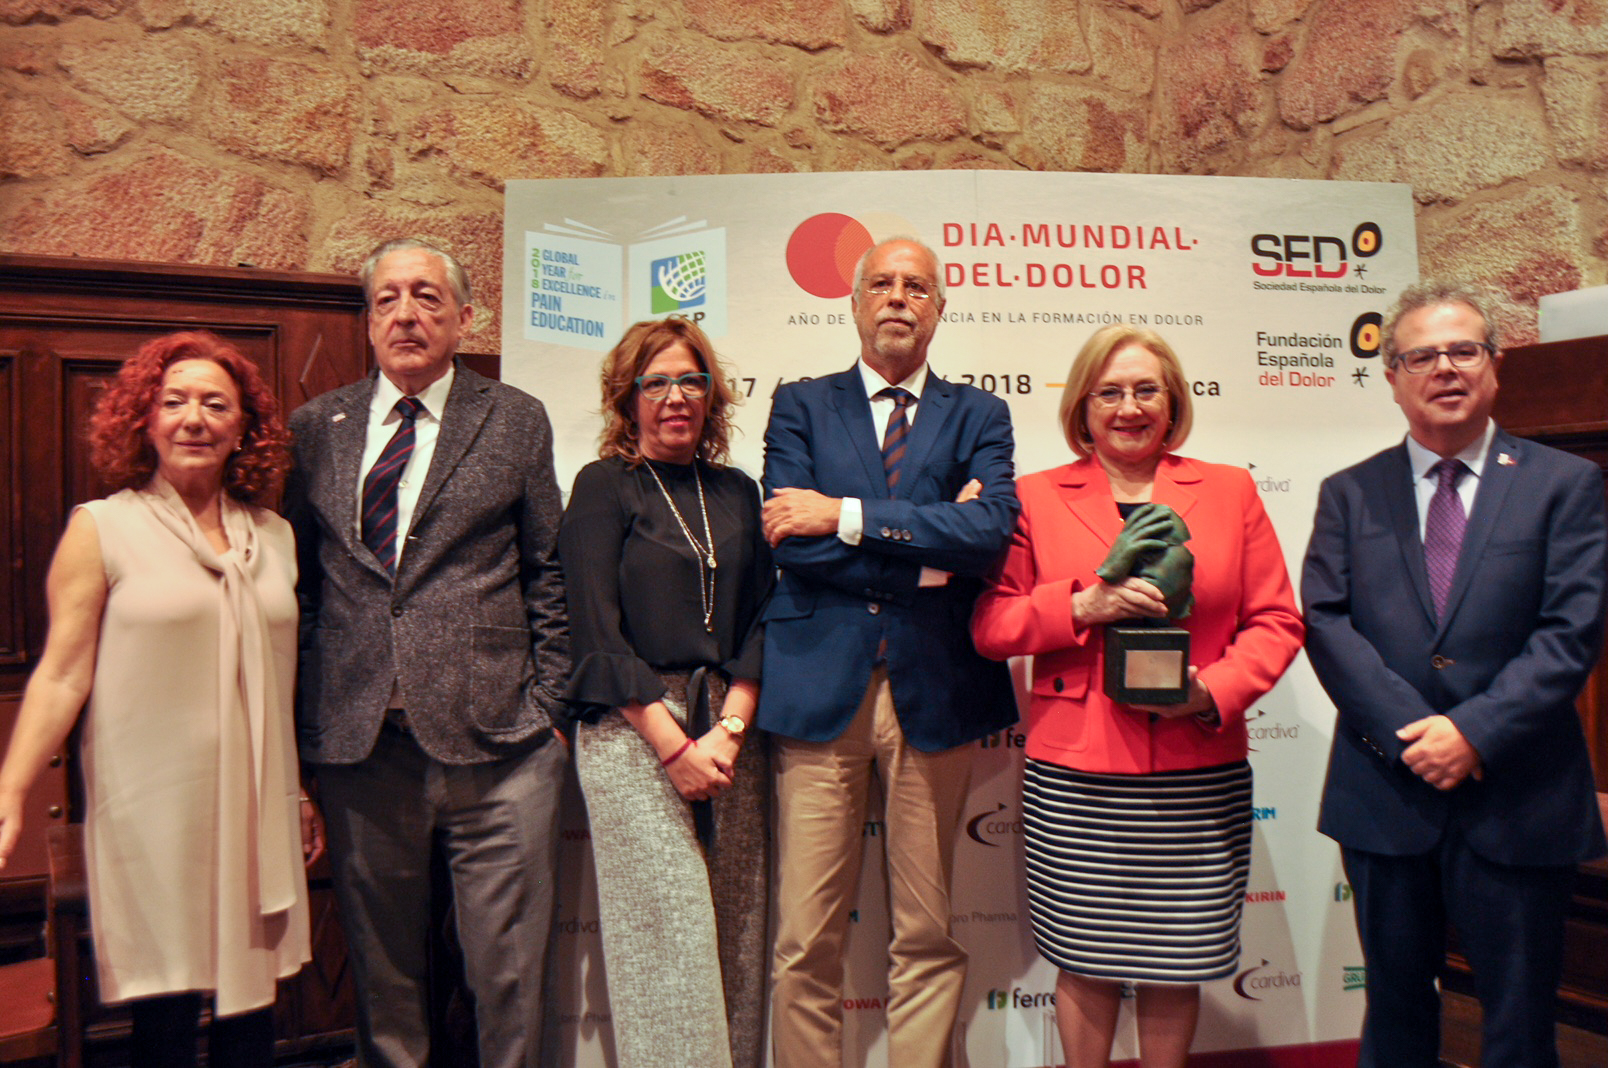 La Universidad de Salamanca recibe el Premio SED de la Sociedad Española del Dolor en reconocimiento al trabajo realizado a través de la Cátedra del Dolor